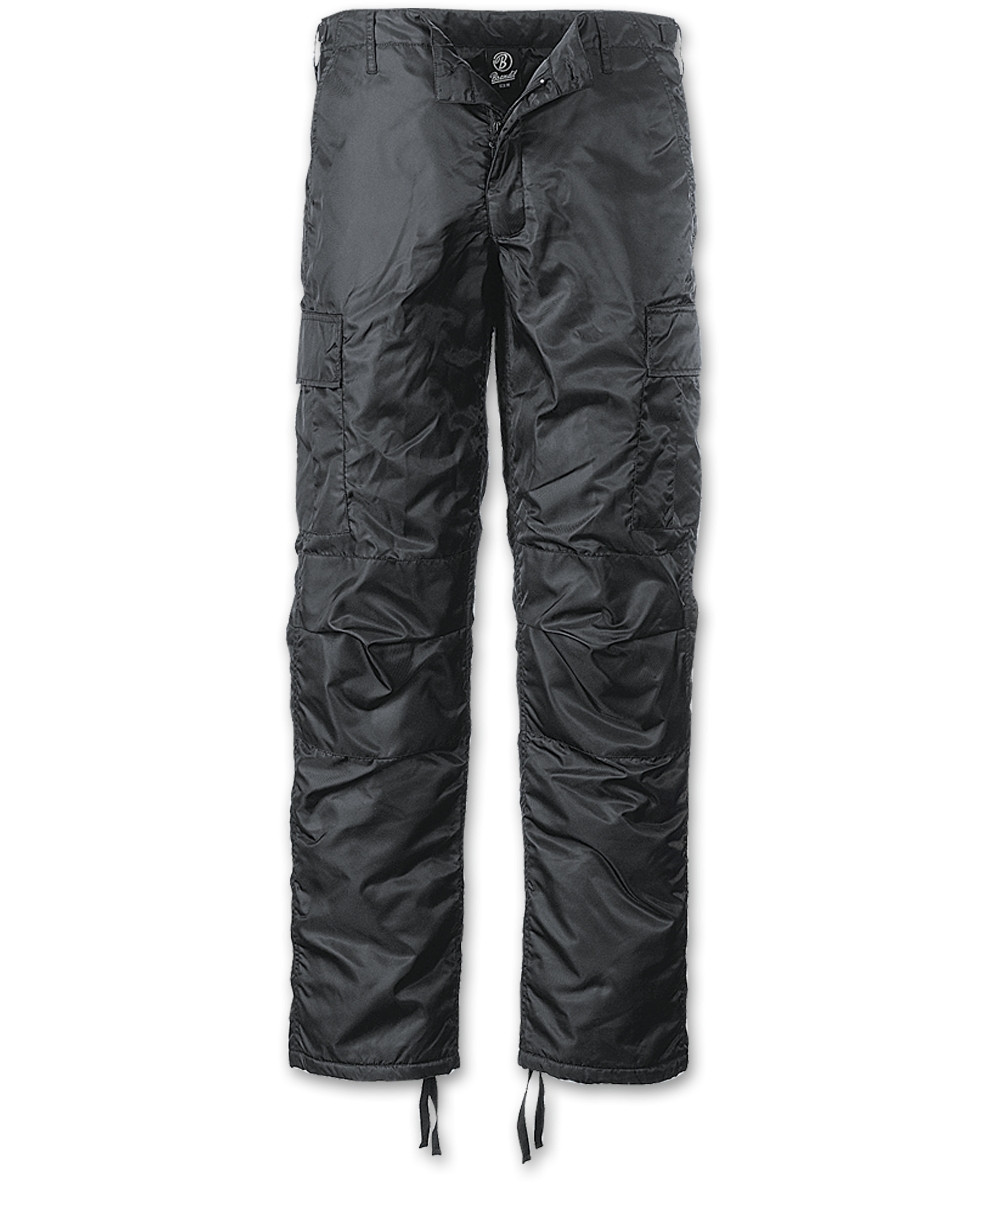 Kalhoty Brandit MA1 Thermo - černé, M